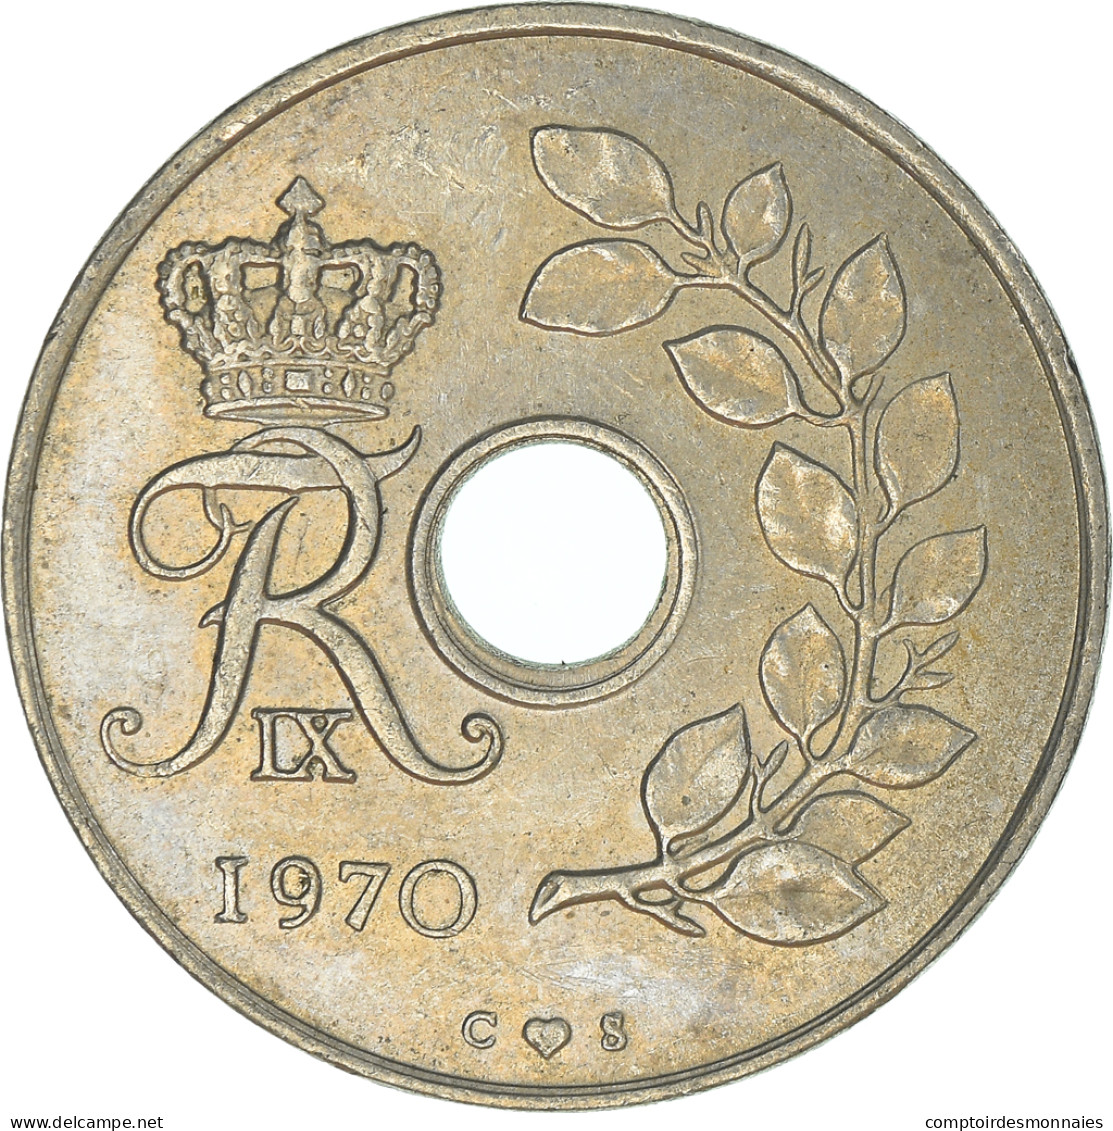 Monnaie, Danemark, 25 Öre, 1970 - Dänemark